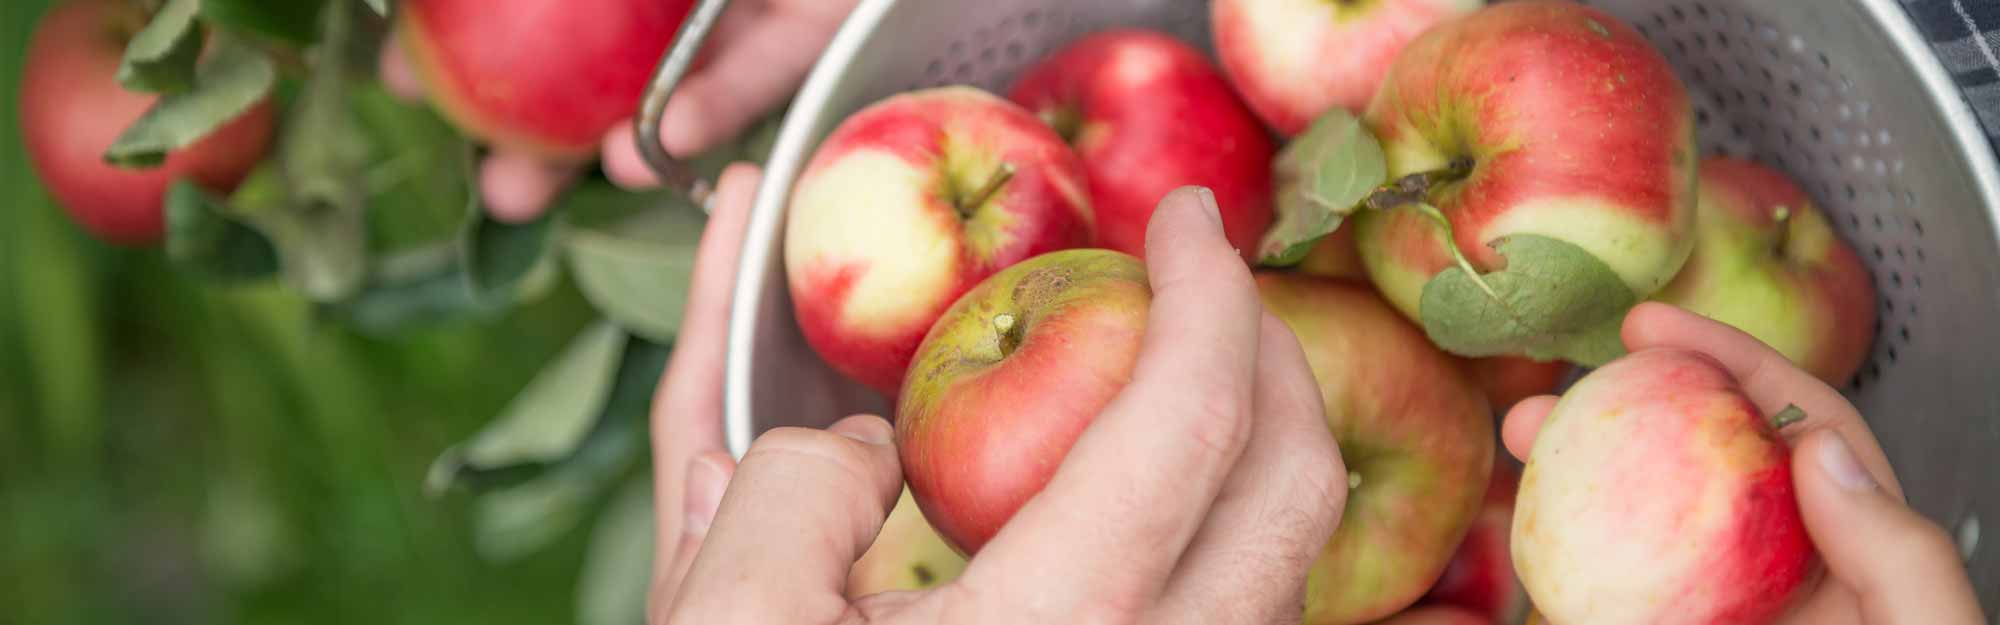 Händer som plockar röda äpplen och lägger de i en hink